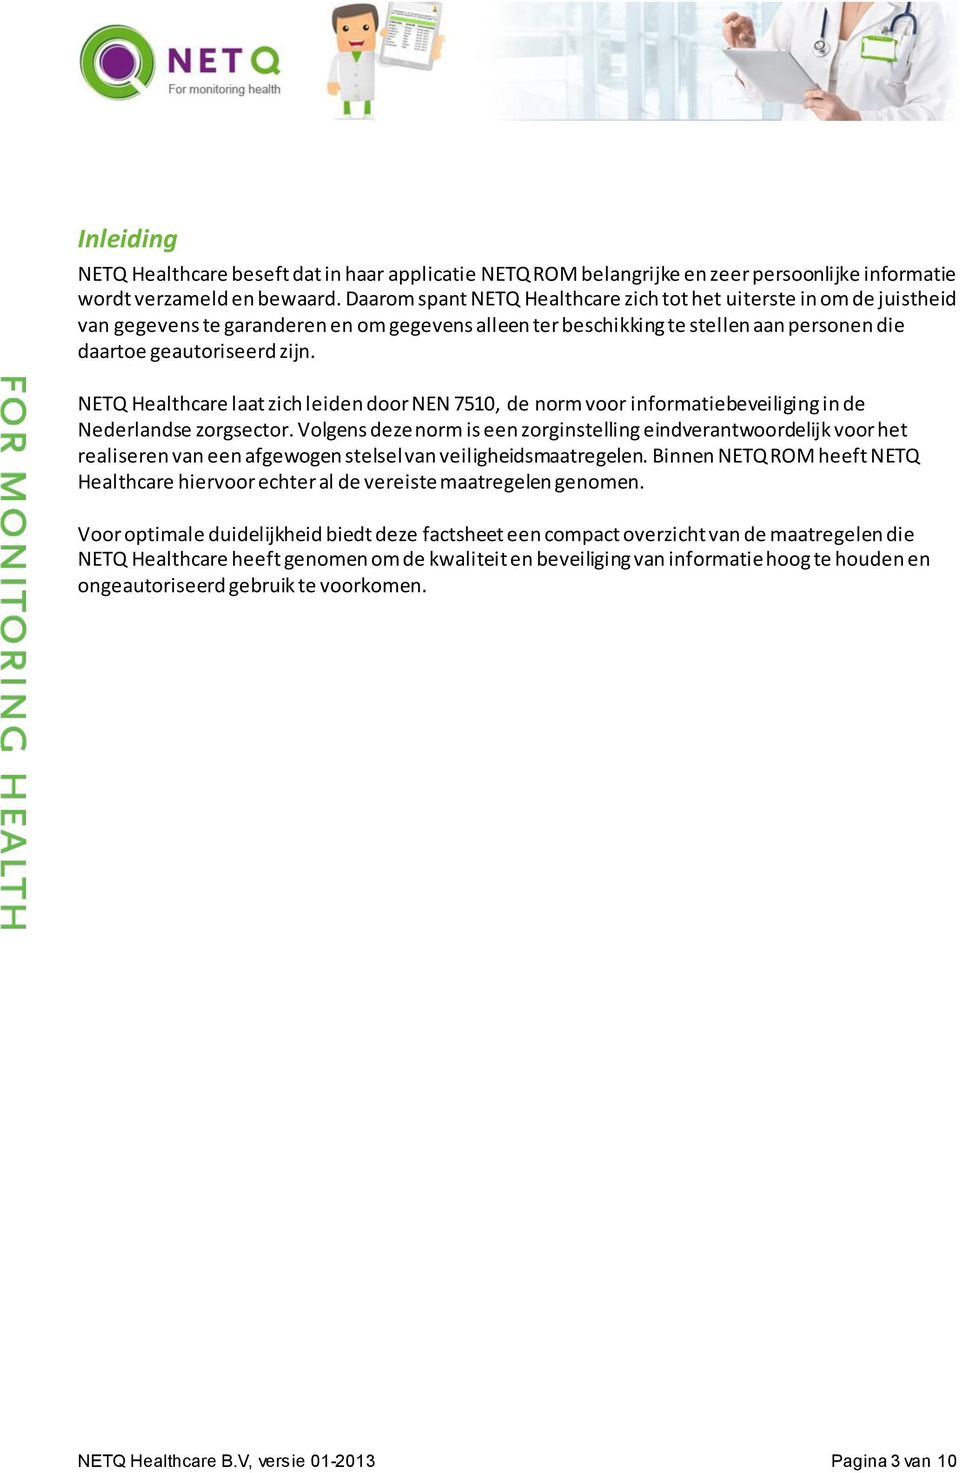 NETQ Healthcare laat zich leiden door NEN 7510, de norm voor informatiebeveiliging in de Nederlandse zorgsector.